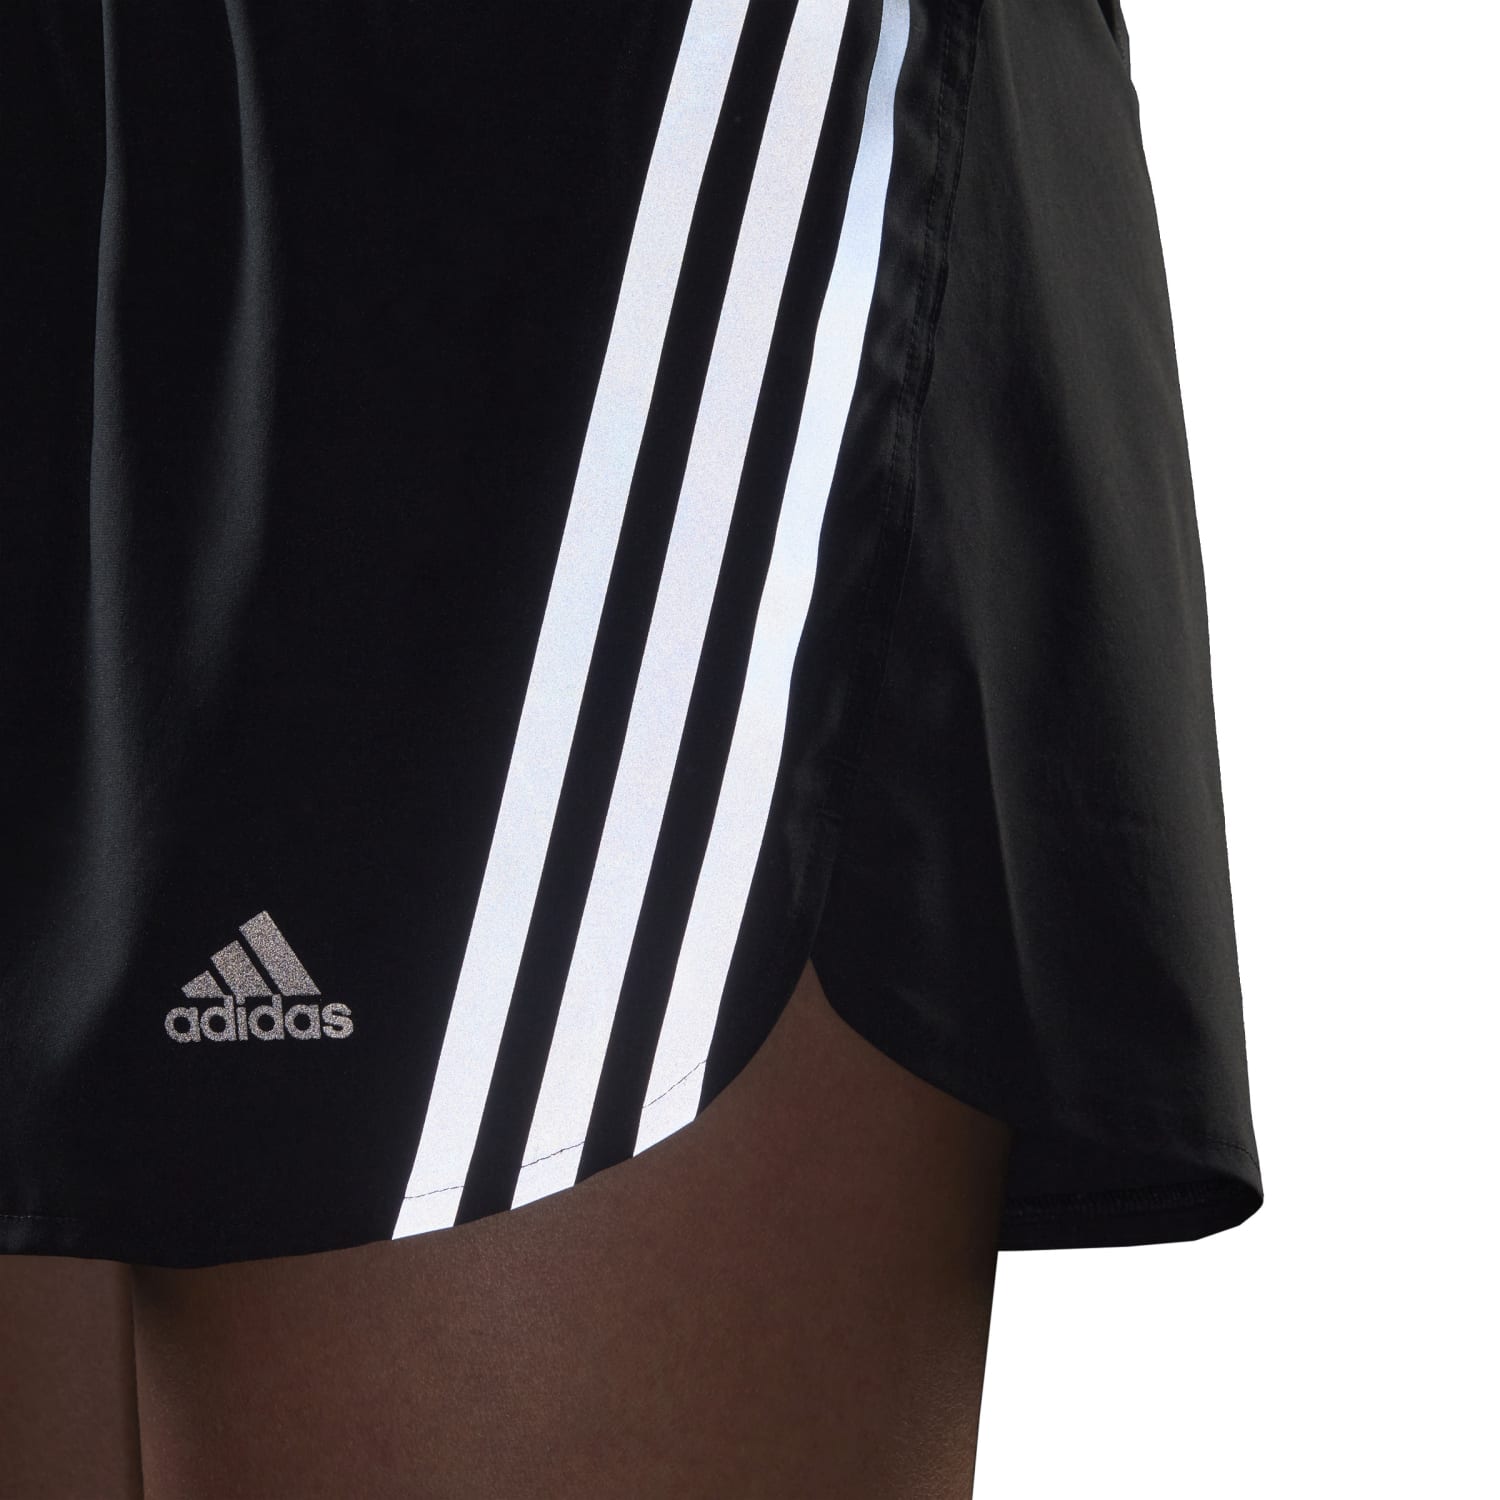 Adidas Running Women Run Icons 3-Stripes Running Shorts 3 Black H57185 - SHORTS - Canada